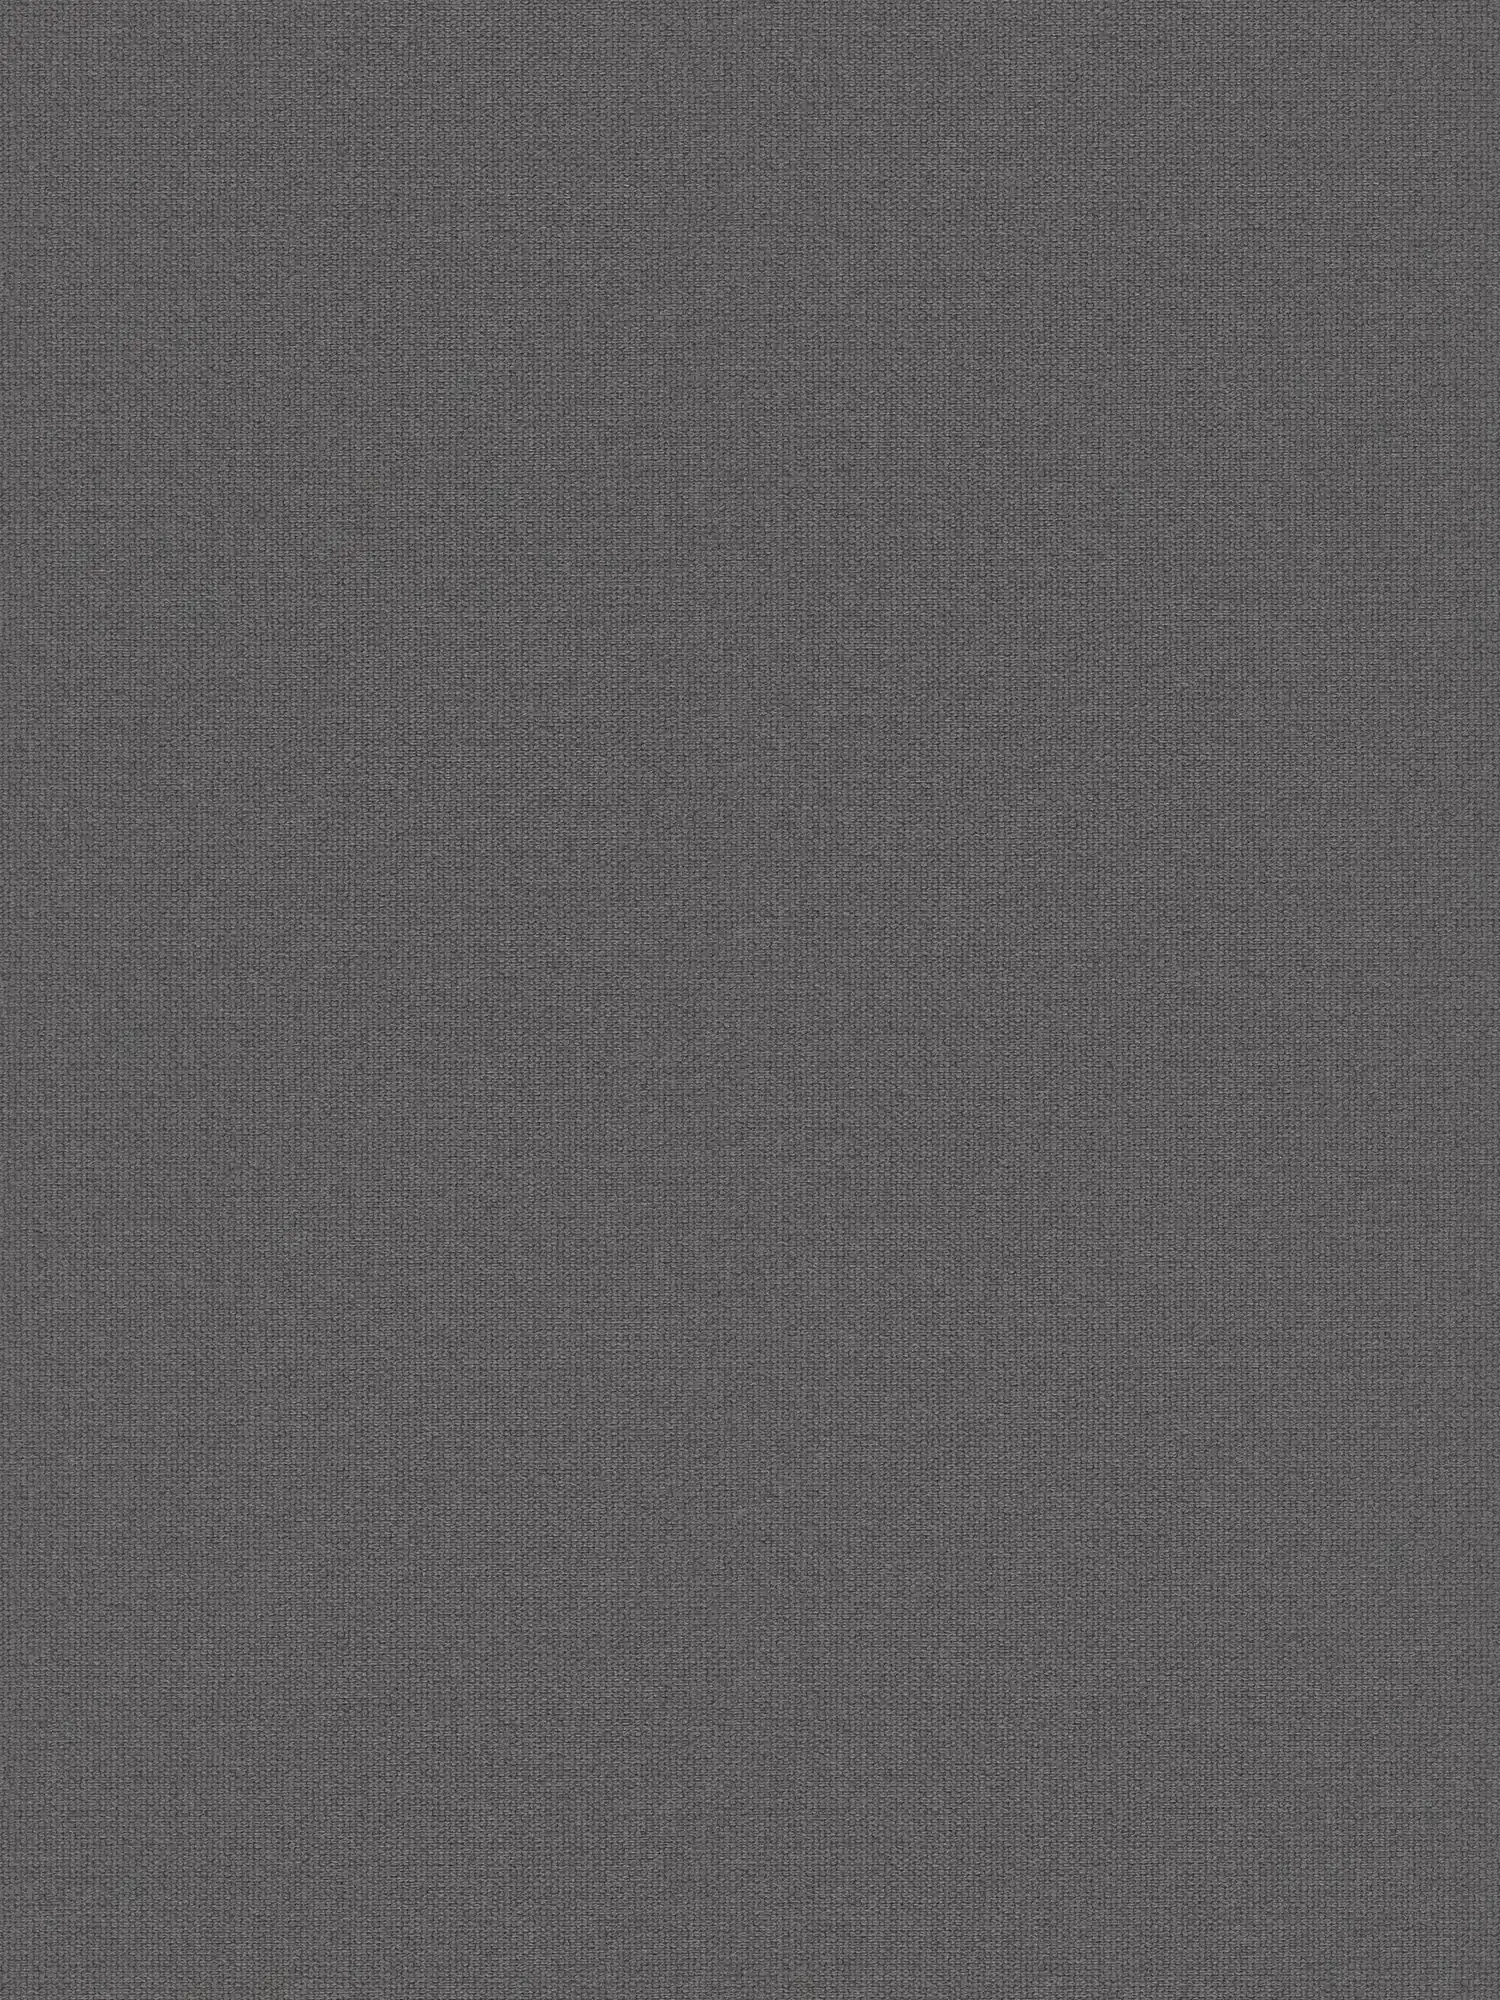 Papel pintado liso de aspecto de lino con diseño texturizado - gris, negro
